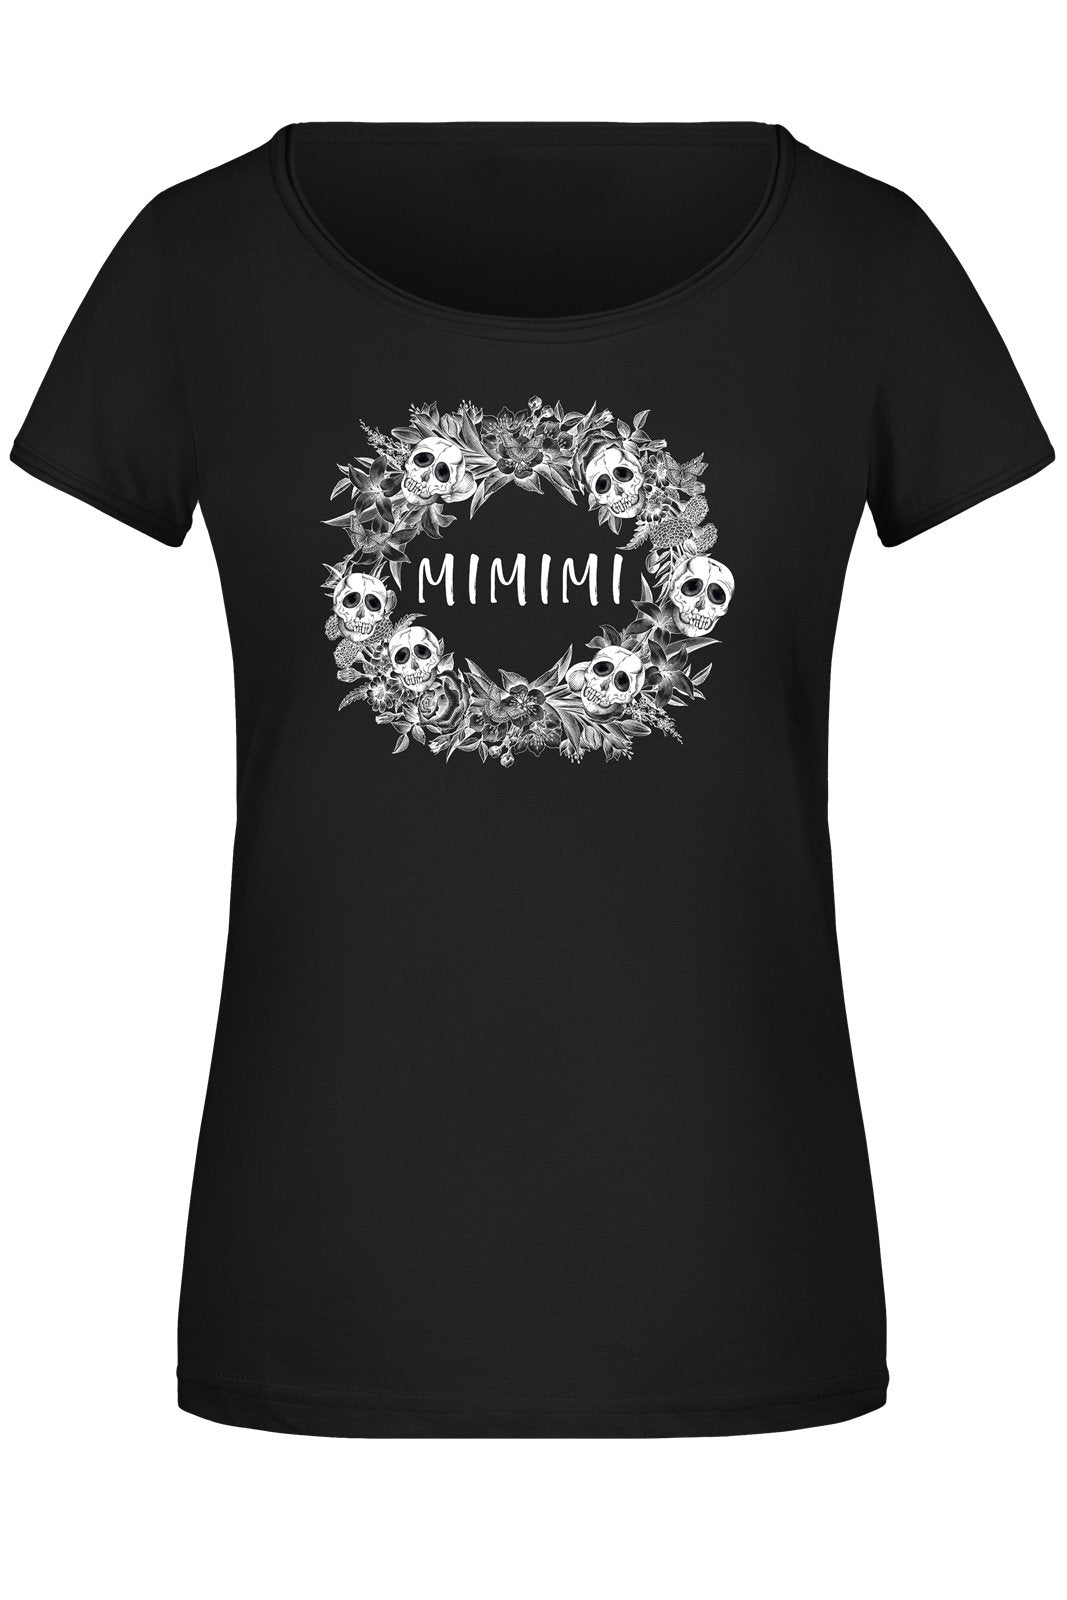 Bild: T-Shirt Damen - Mimimi - Skull Statement Geschenkidee